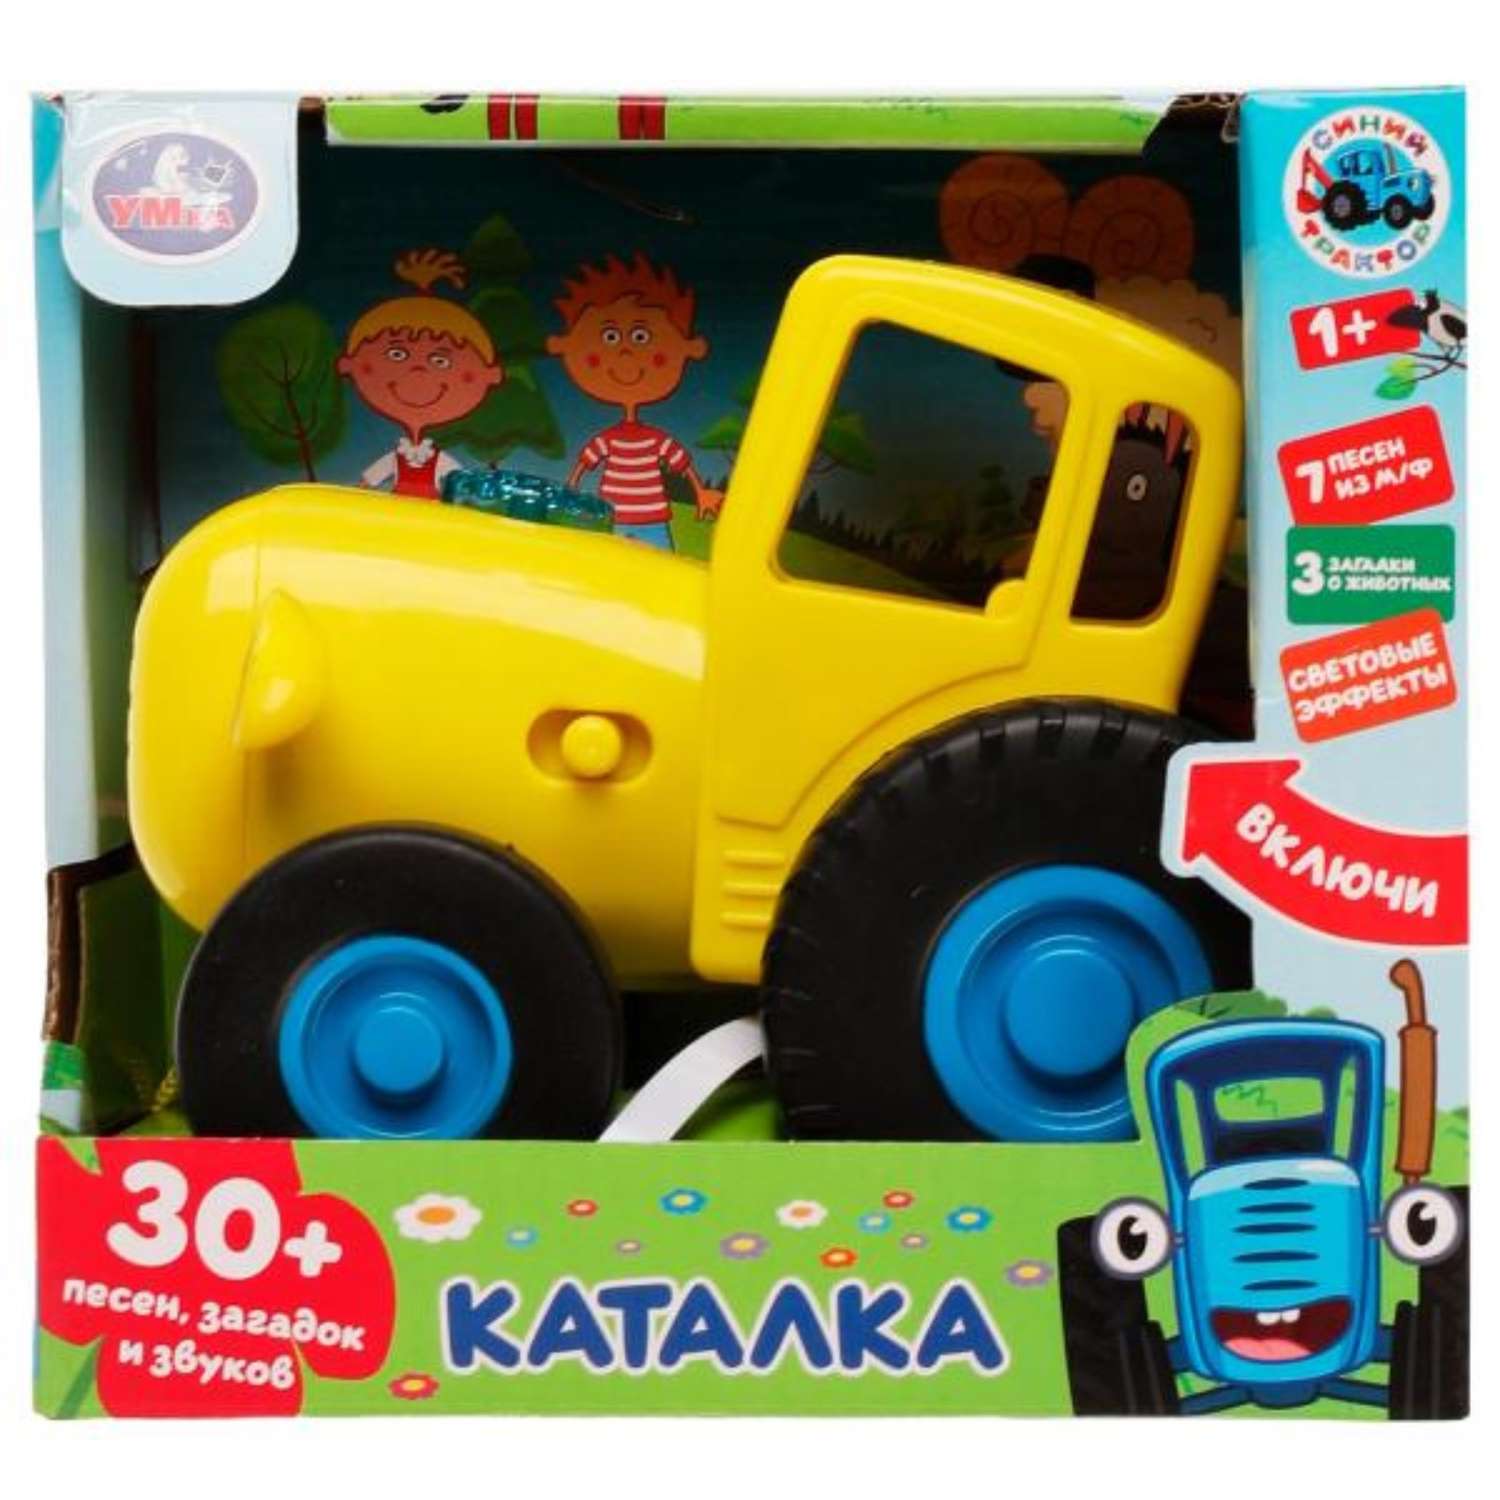 Музыкальная игрушка Zabiaka «Синий Трактор. Каталка» 30 песен загадок и звуков цвет желтый - фото 1